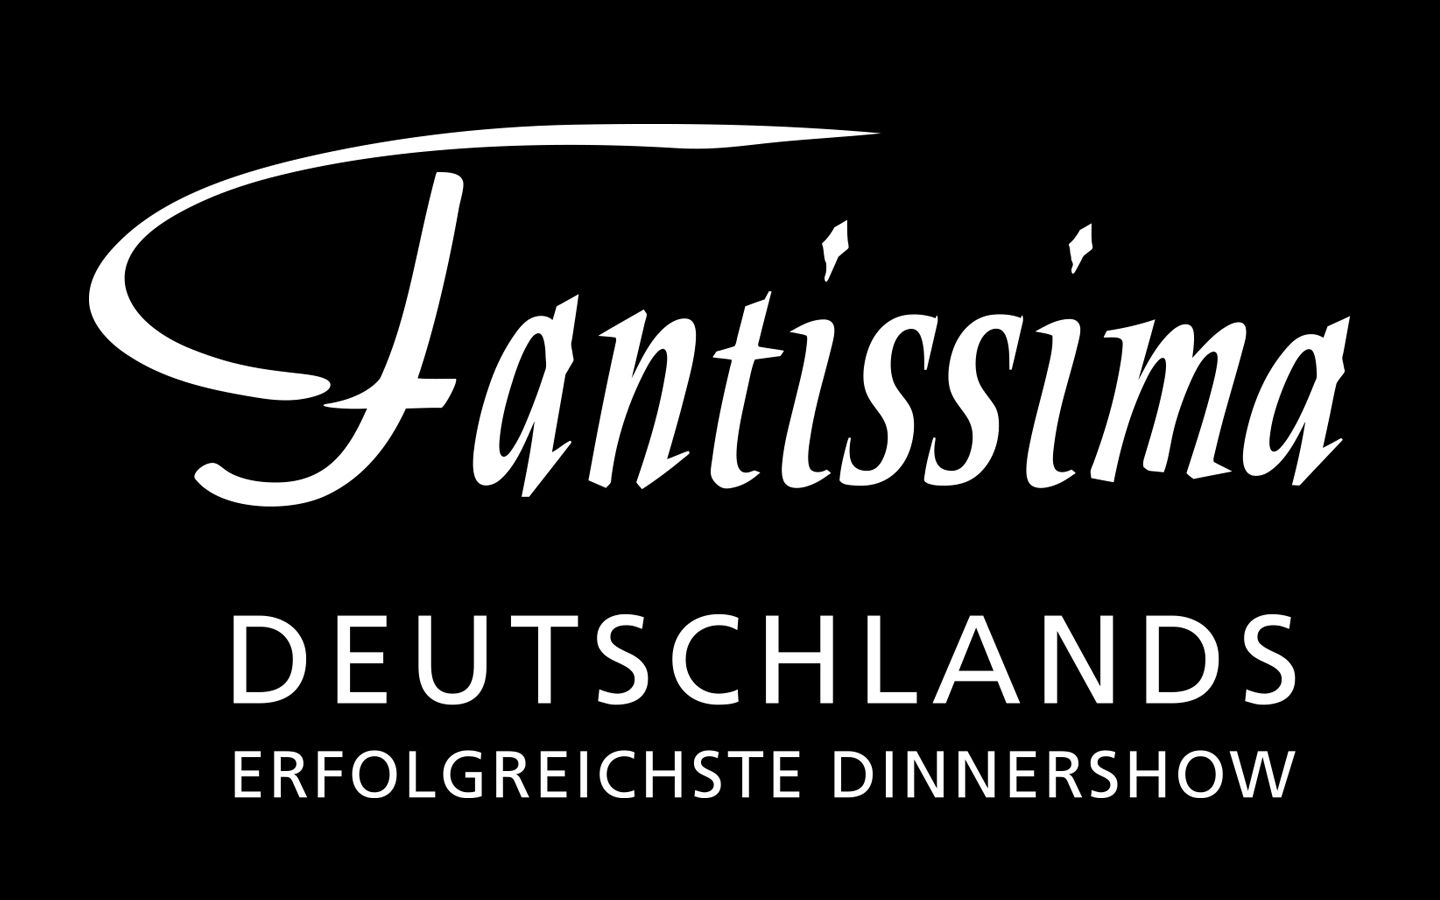 Die Datei fantissima_logo_deutschland_erfolgreichste_dinnershow_png.zip herunterladen